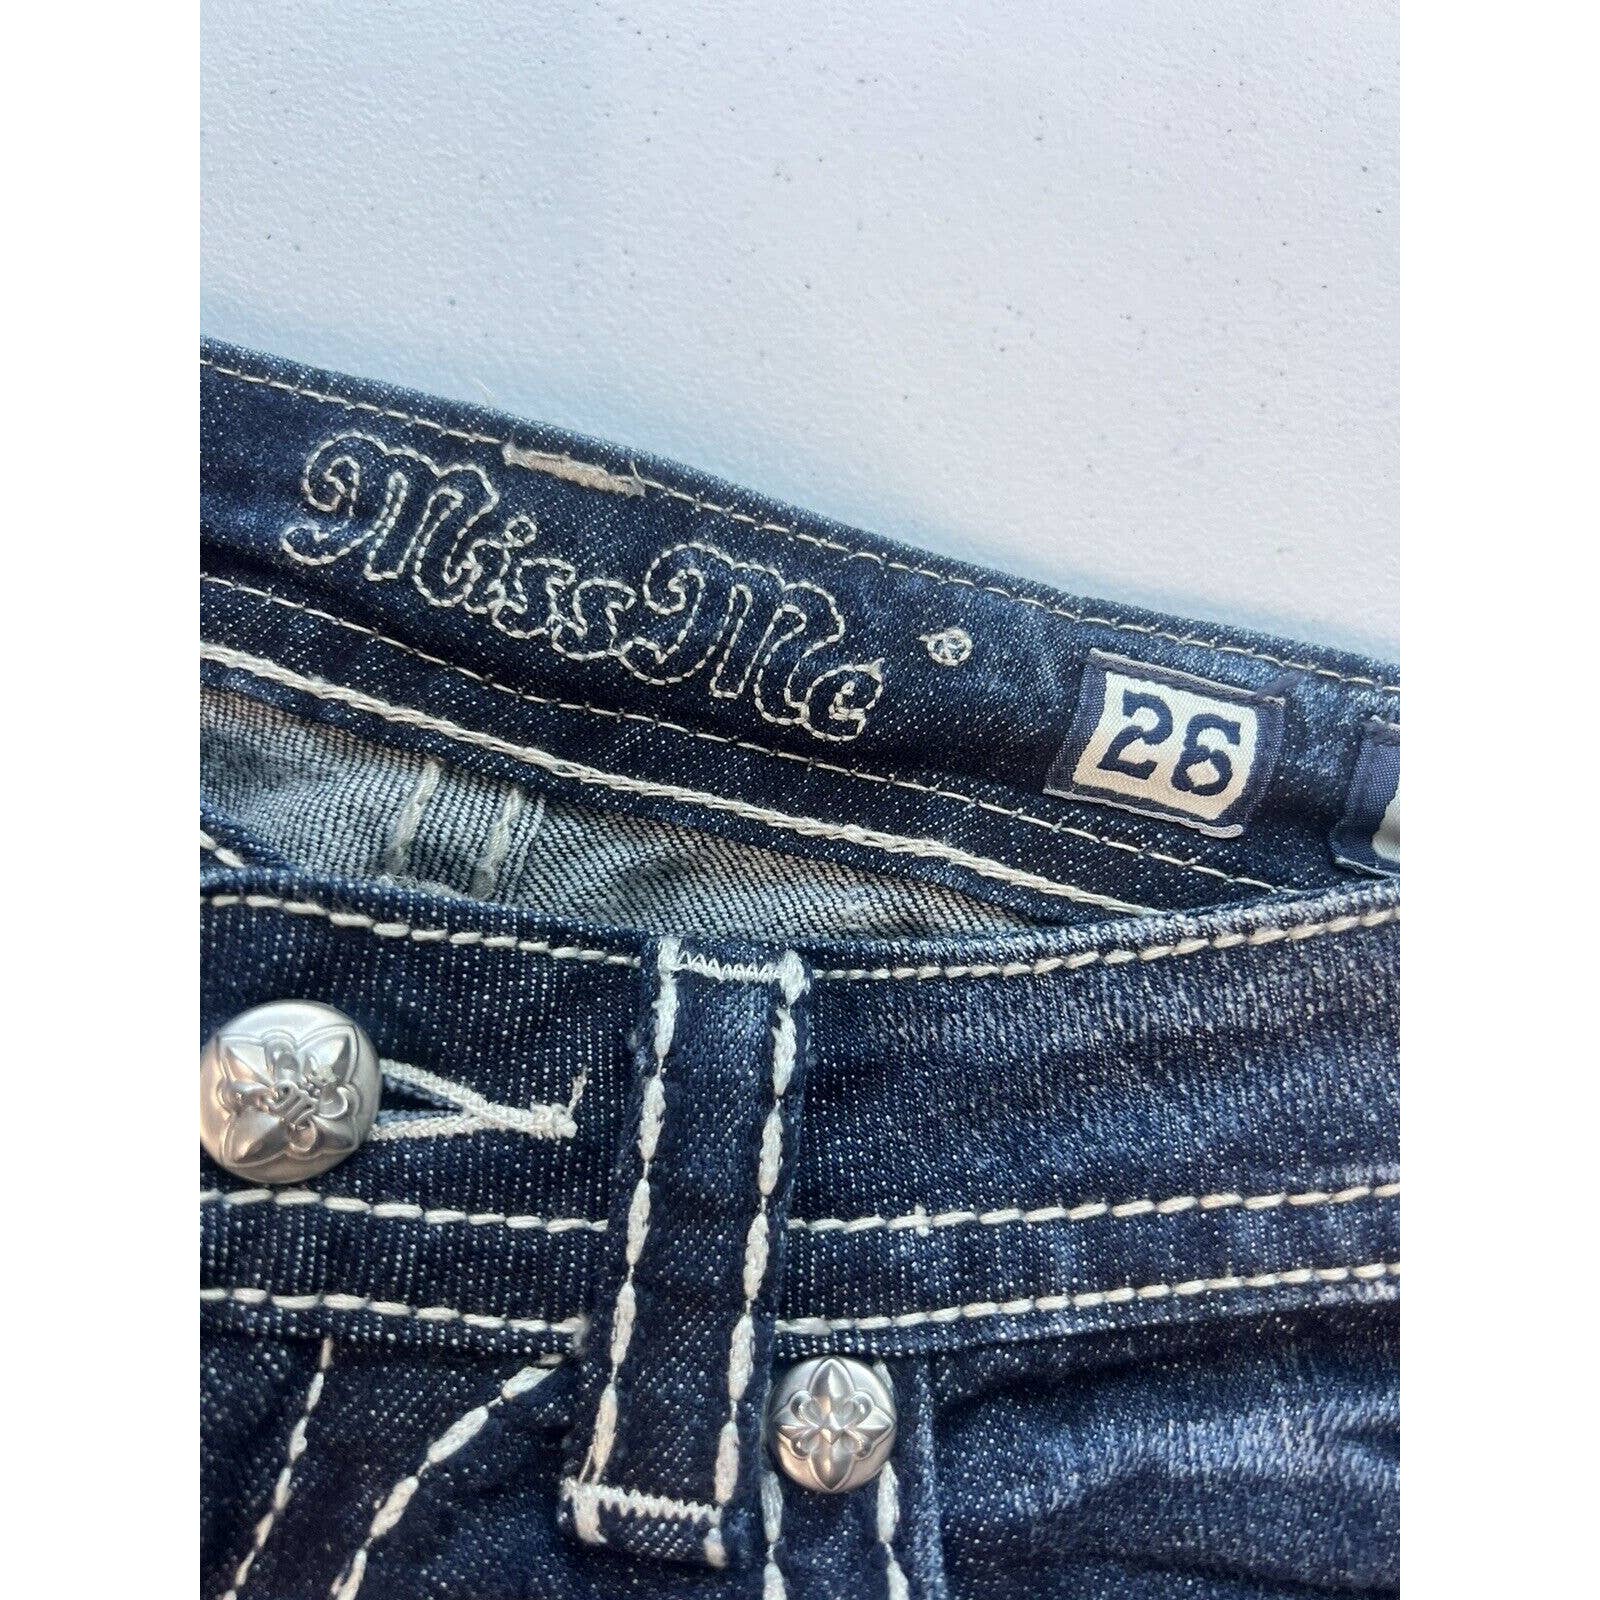 Miss Me Bootcut Jeans Women’s 26 Dark Wash Rhinestones Frayed Hem 26x30 JW5161B4